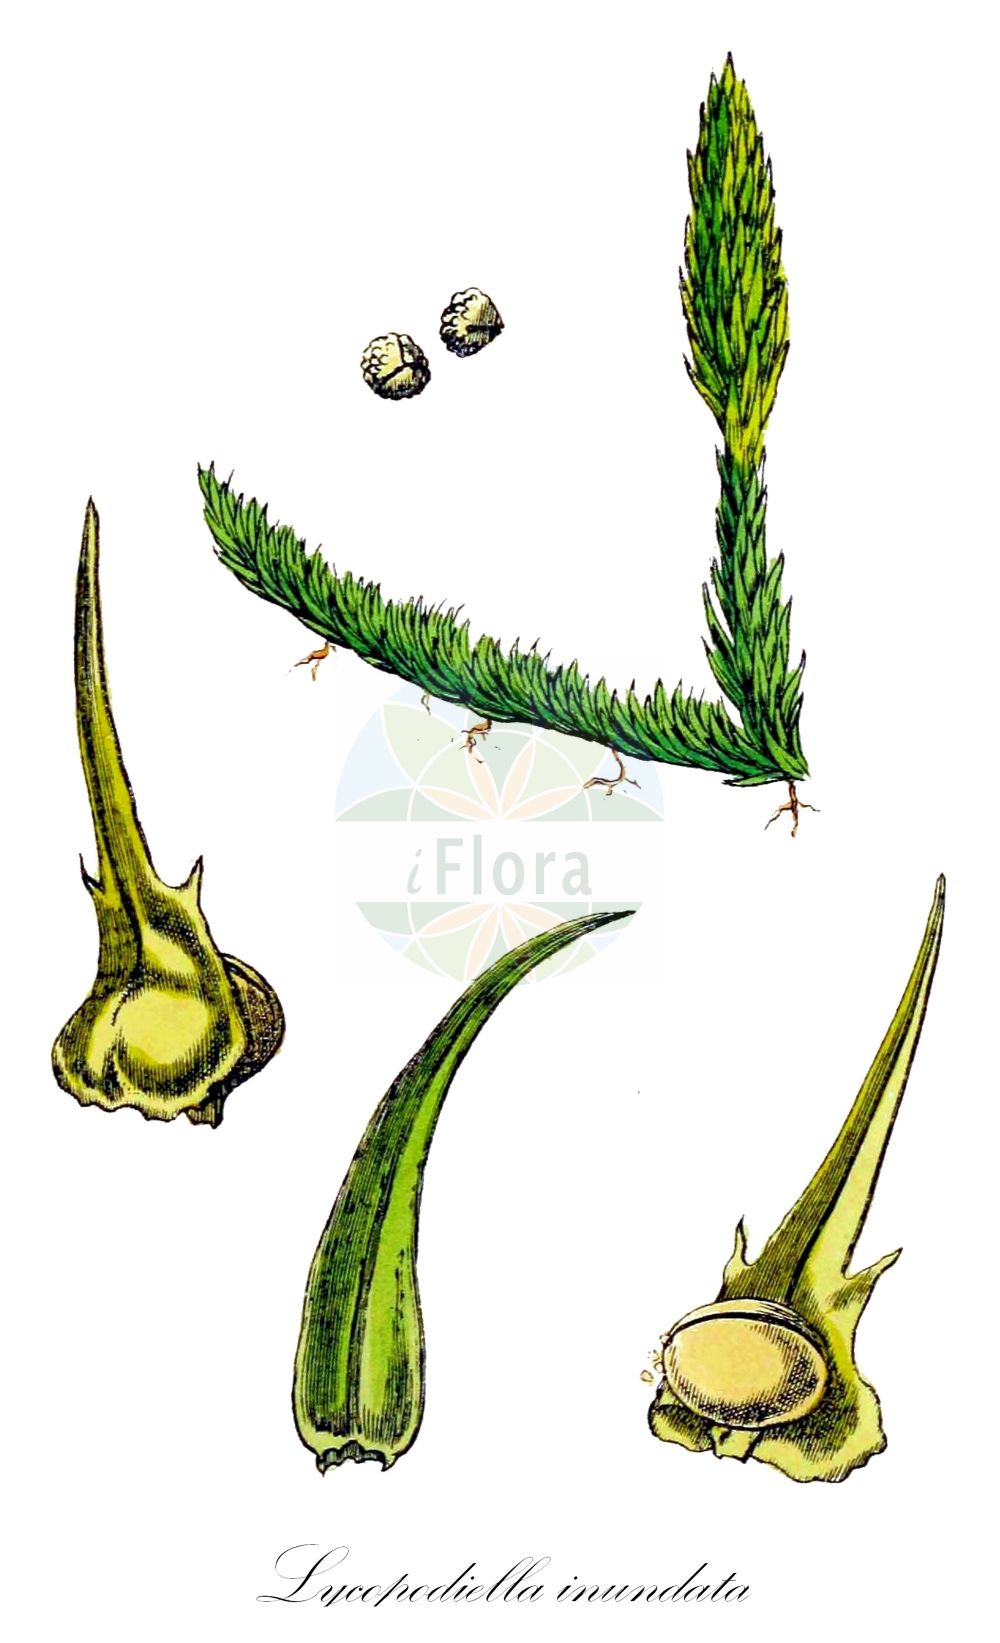 Historische Abbildung von Lycopodiella inundata (Gewöhnlicher Sumpf-Bärlapp - Marsh Clubmoss). Das Bild zeigt Blatt, Bluete, Frucht und Same. ---- Historical Drawing of Lycopodiella inundata (Gewöhnlicher Sumpf-Bärlapp - Marsh Clubmoss). The image is showing leaf, flower, fruit and seed.(Lycopodiella inundata,Gewöhnlicher Sumpf-Bärlapp,Marsh Clubmoss,Lepidotis inundata,Lycopodiella inundata,Lycopodium inundatum,Gewoehnlicher Sumpf-Baerlapp,Gemeiner Moorbaerlapp,Sumpf-Baerlapp,Marsh Clubmoss,Inundated Clubmoss,Lycopodiella,Sumpf-Bärlapp,Clubmoss,Lycopodiaceae,Bärlappgewächse,Clubmoss family,Blatt,Bluete,Frucht,Same,leaf,flower,fruit,seed,Sowerby (1790-1813))